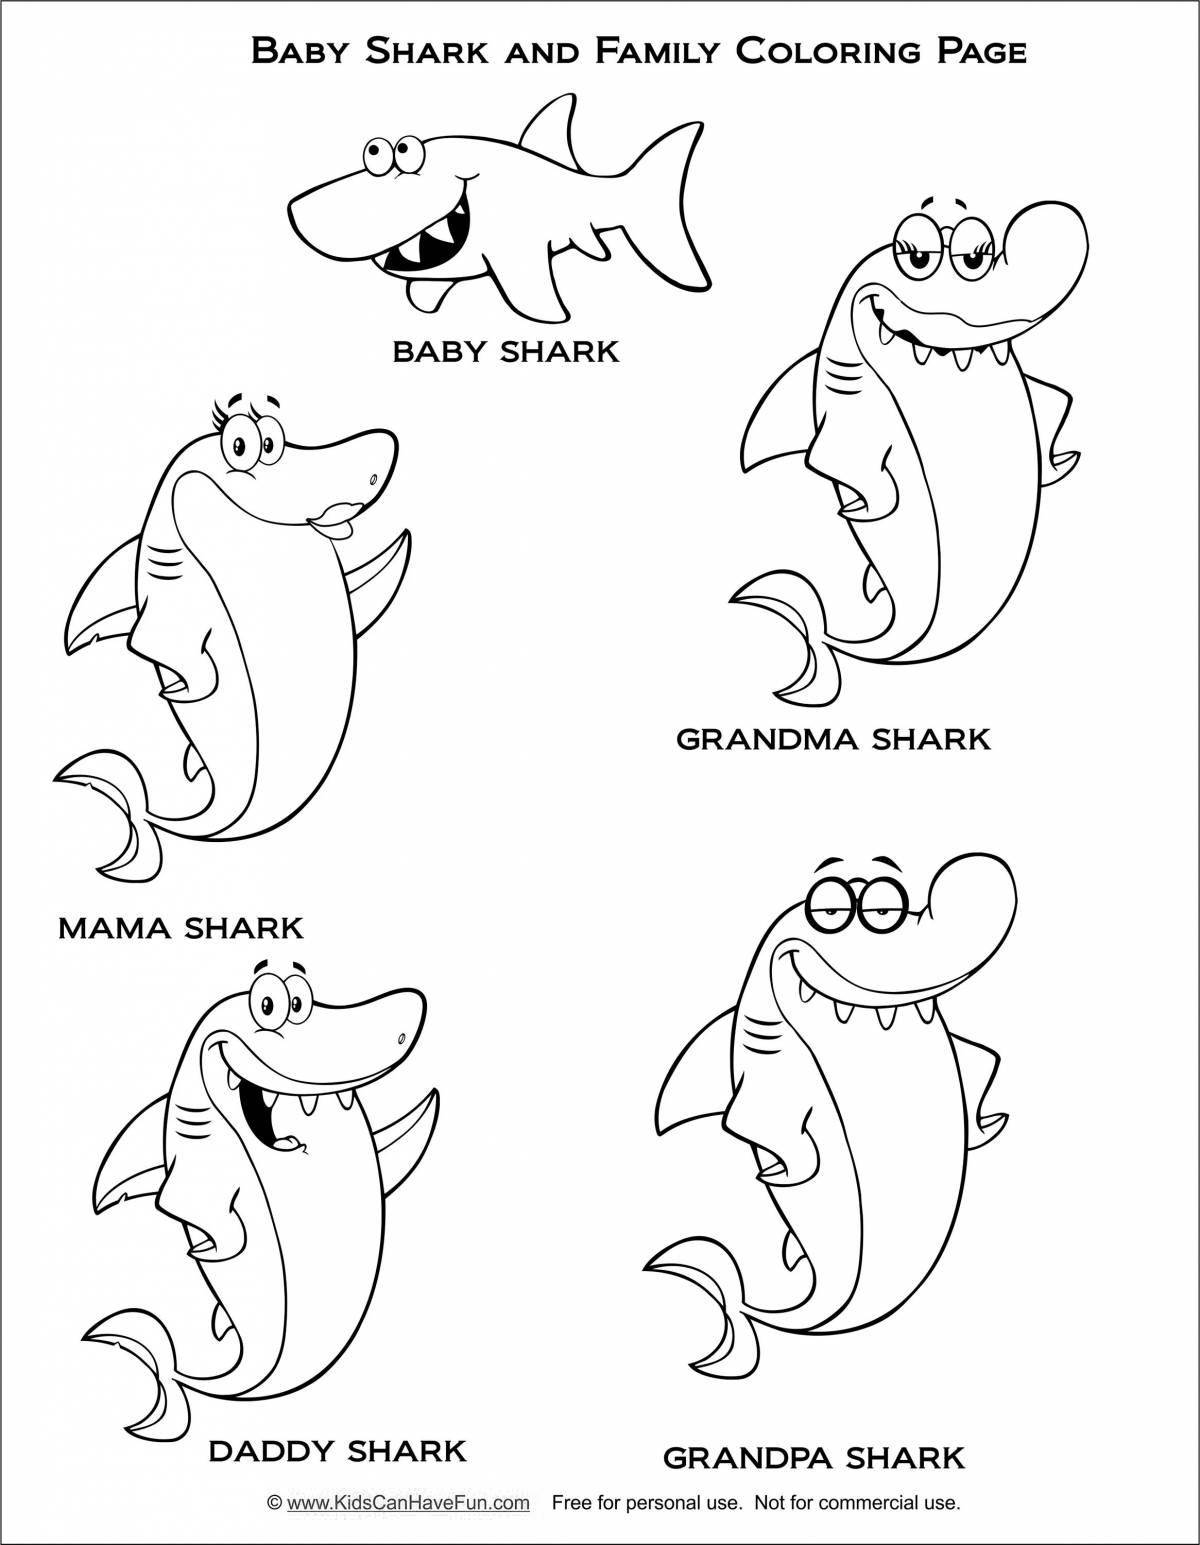 Привлекательная страница раскраски семьи акул